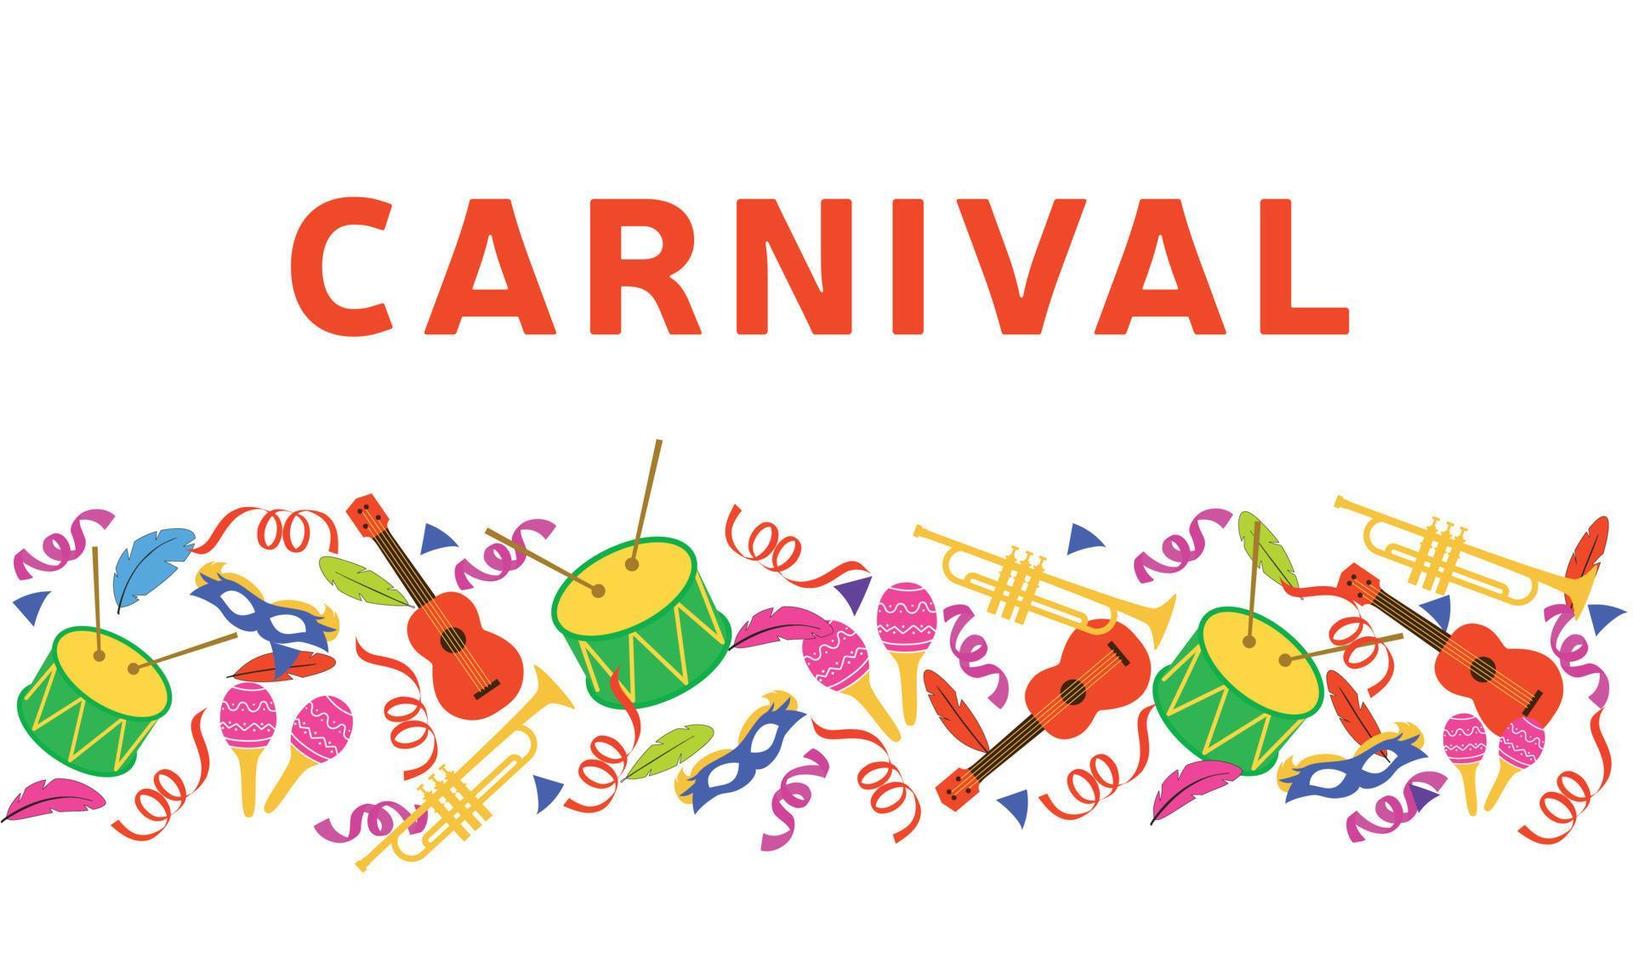 banier carnaval met veel musical instrumenten. trommel, ukelele, trompet, maracas. vector illustratie.